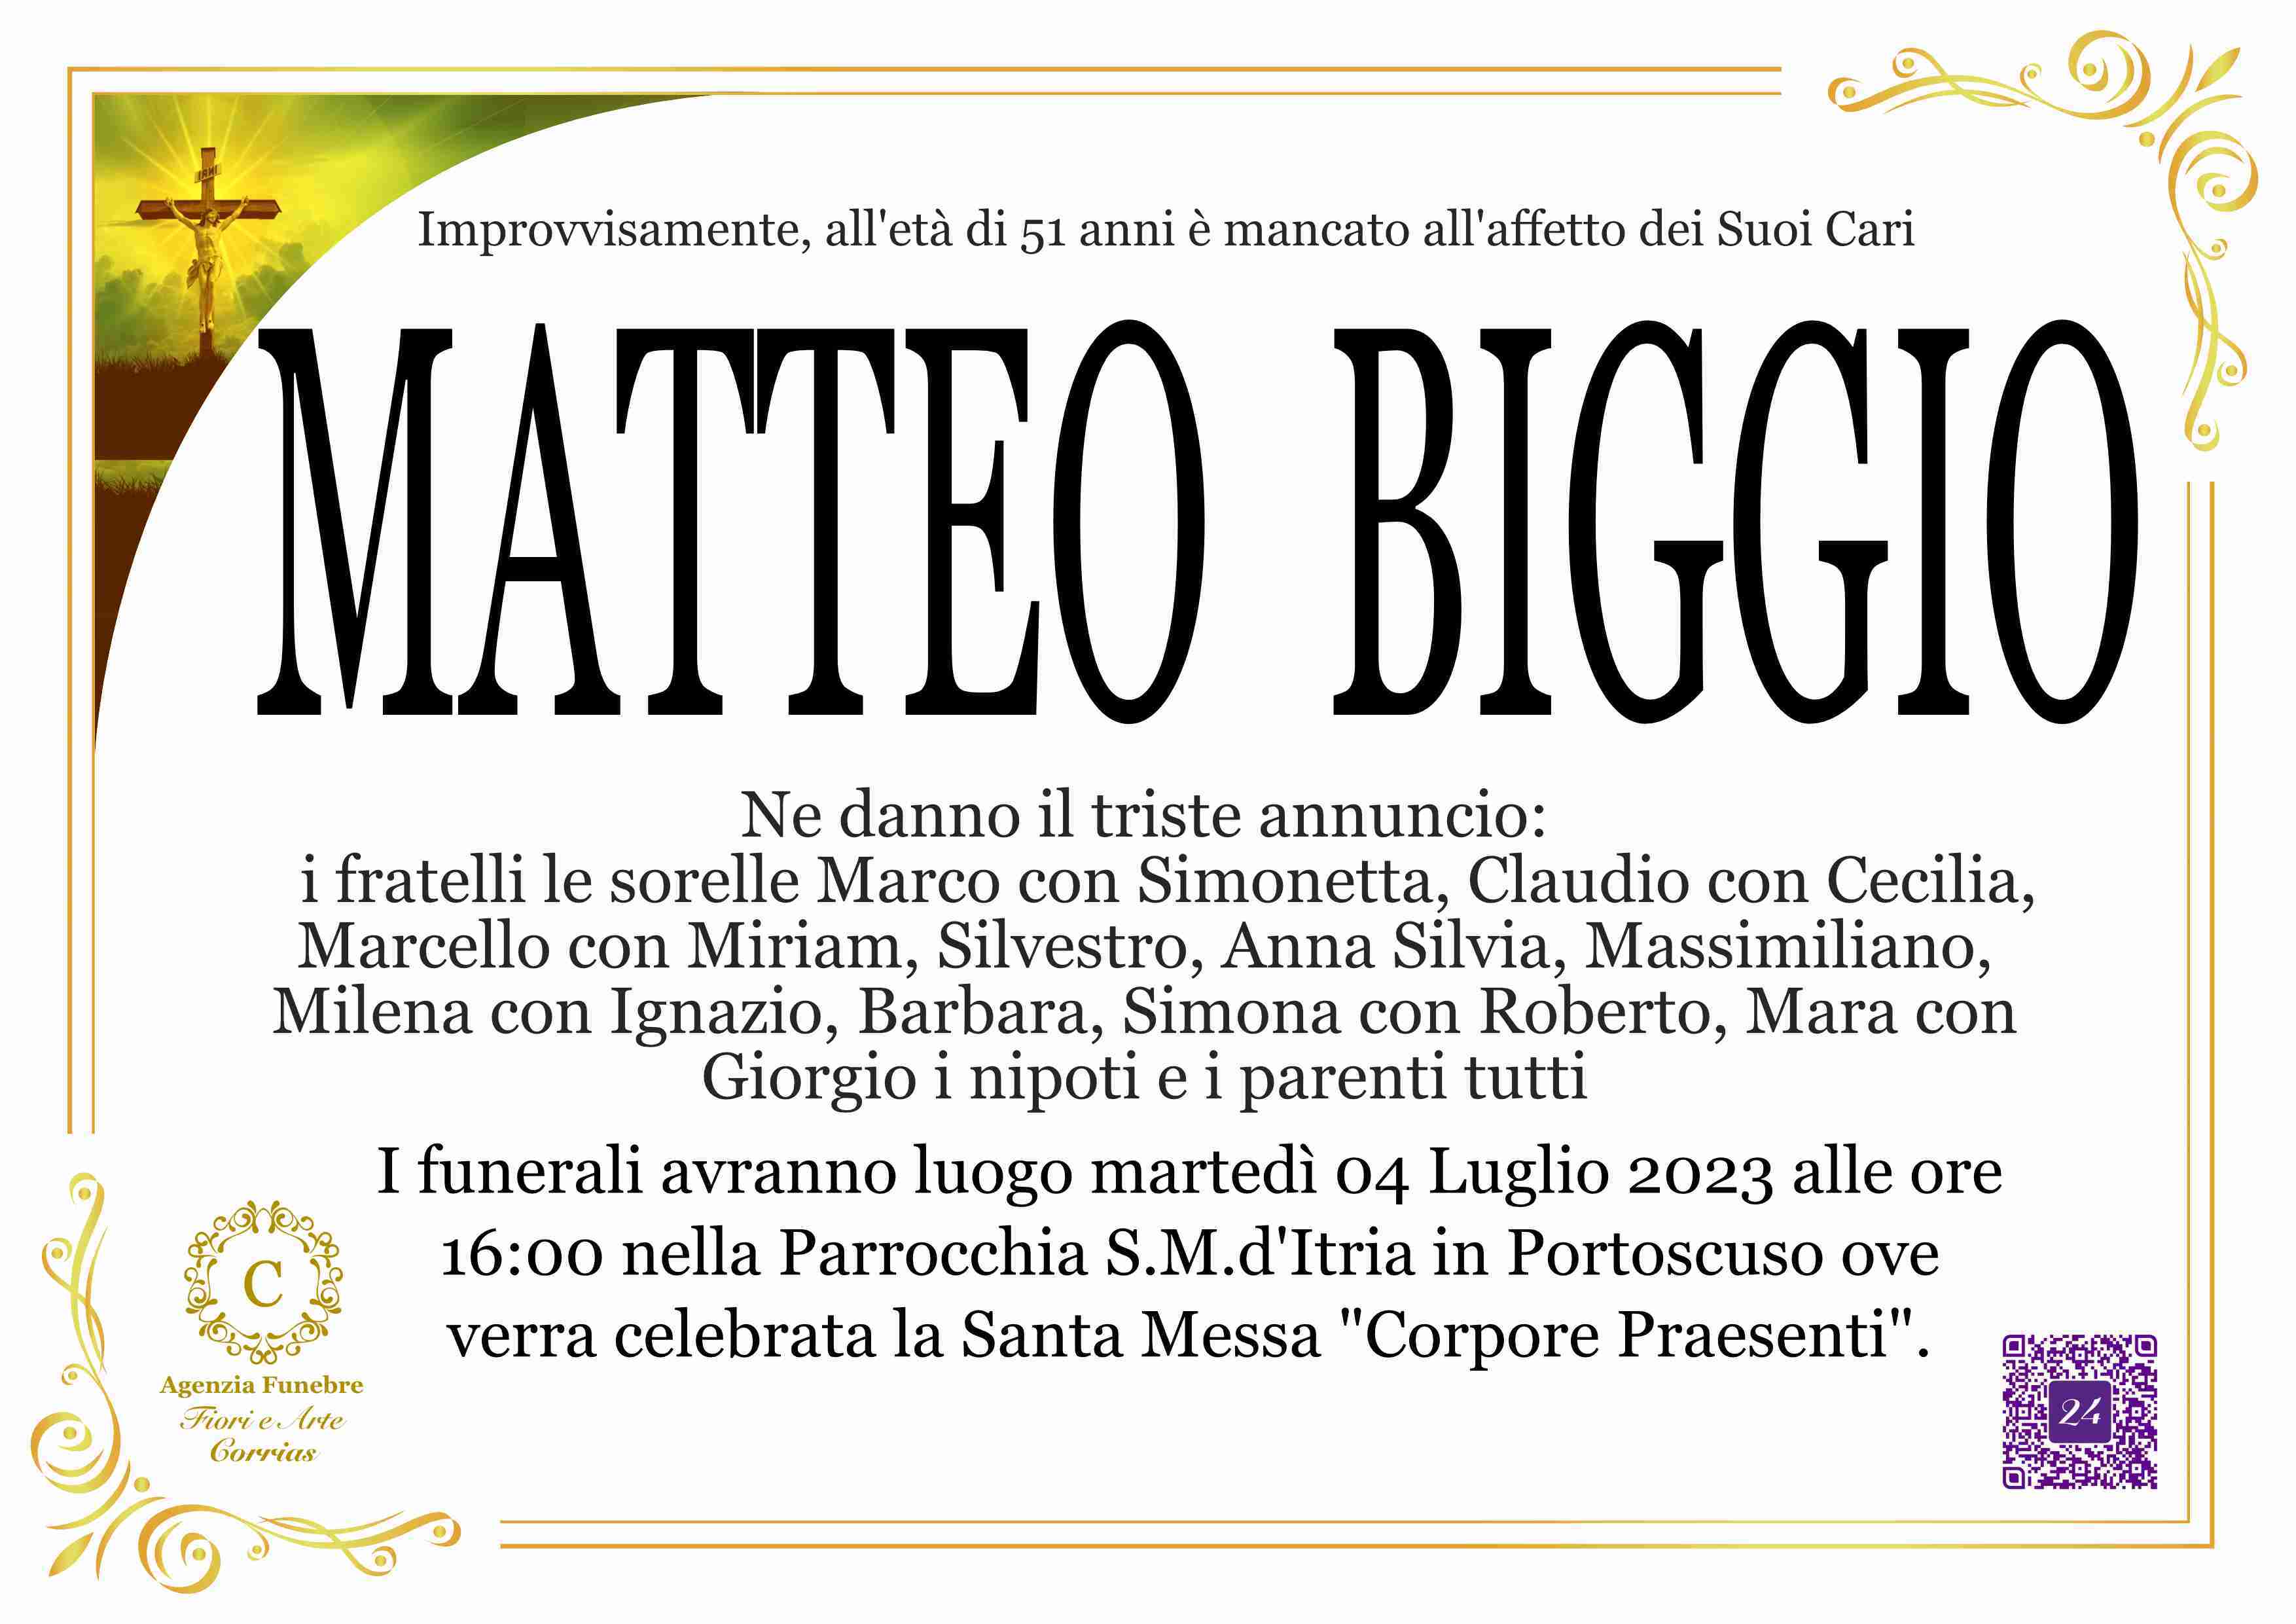 Matteo Biggio